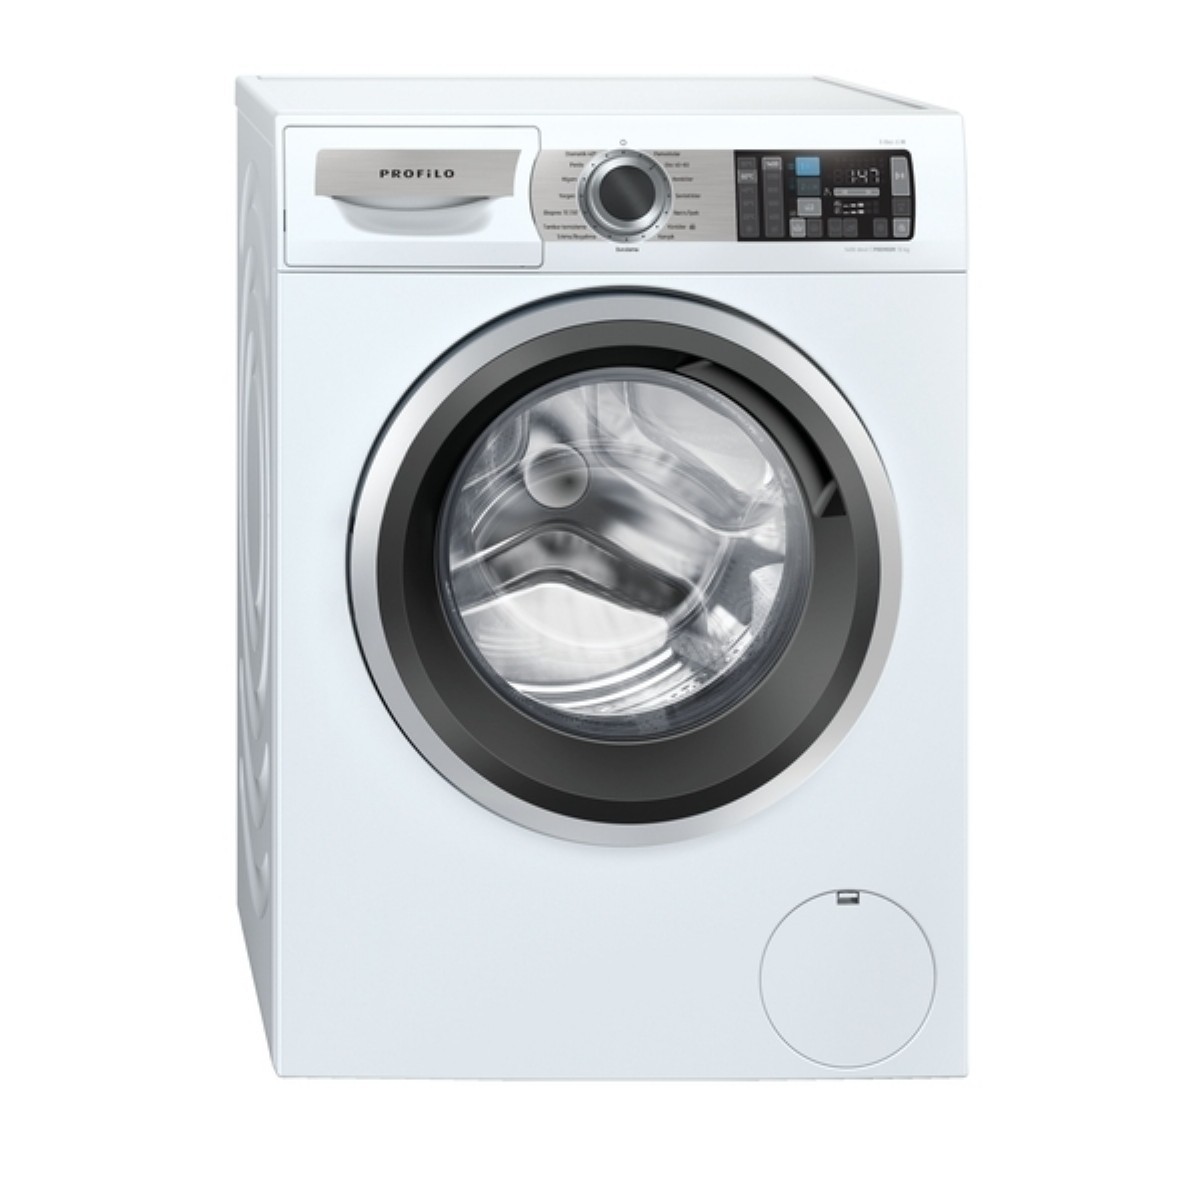 Çamaşır Makineleri | Profilo CMI140LTR E-Doz 1400 Devir 10 kg Çamaşır Makinesi | CMI140LTR | Profilo CMI140LTR E-Doz 1400 Devir 10 kg Çamaşır Makinesi, Profilo CMI140LTR en ucuz | 